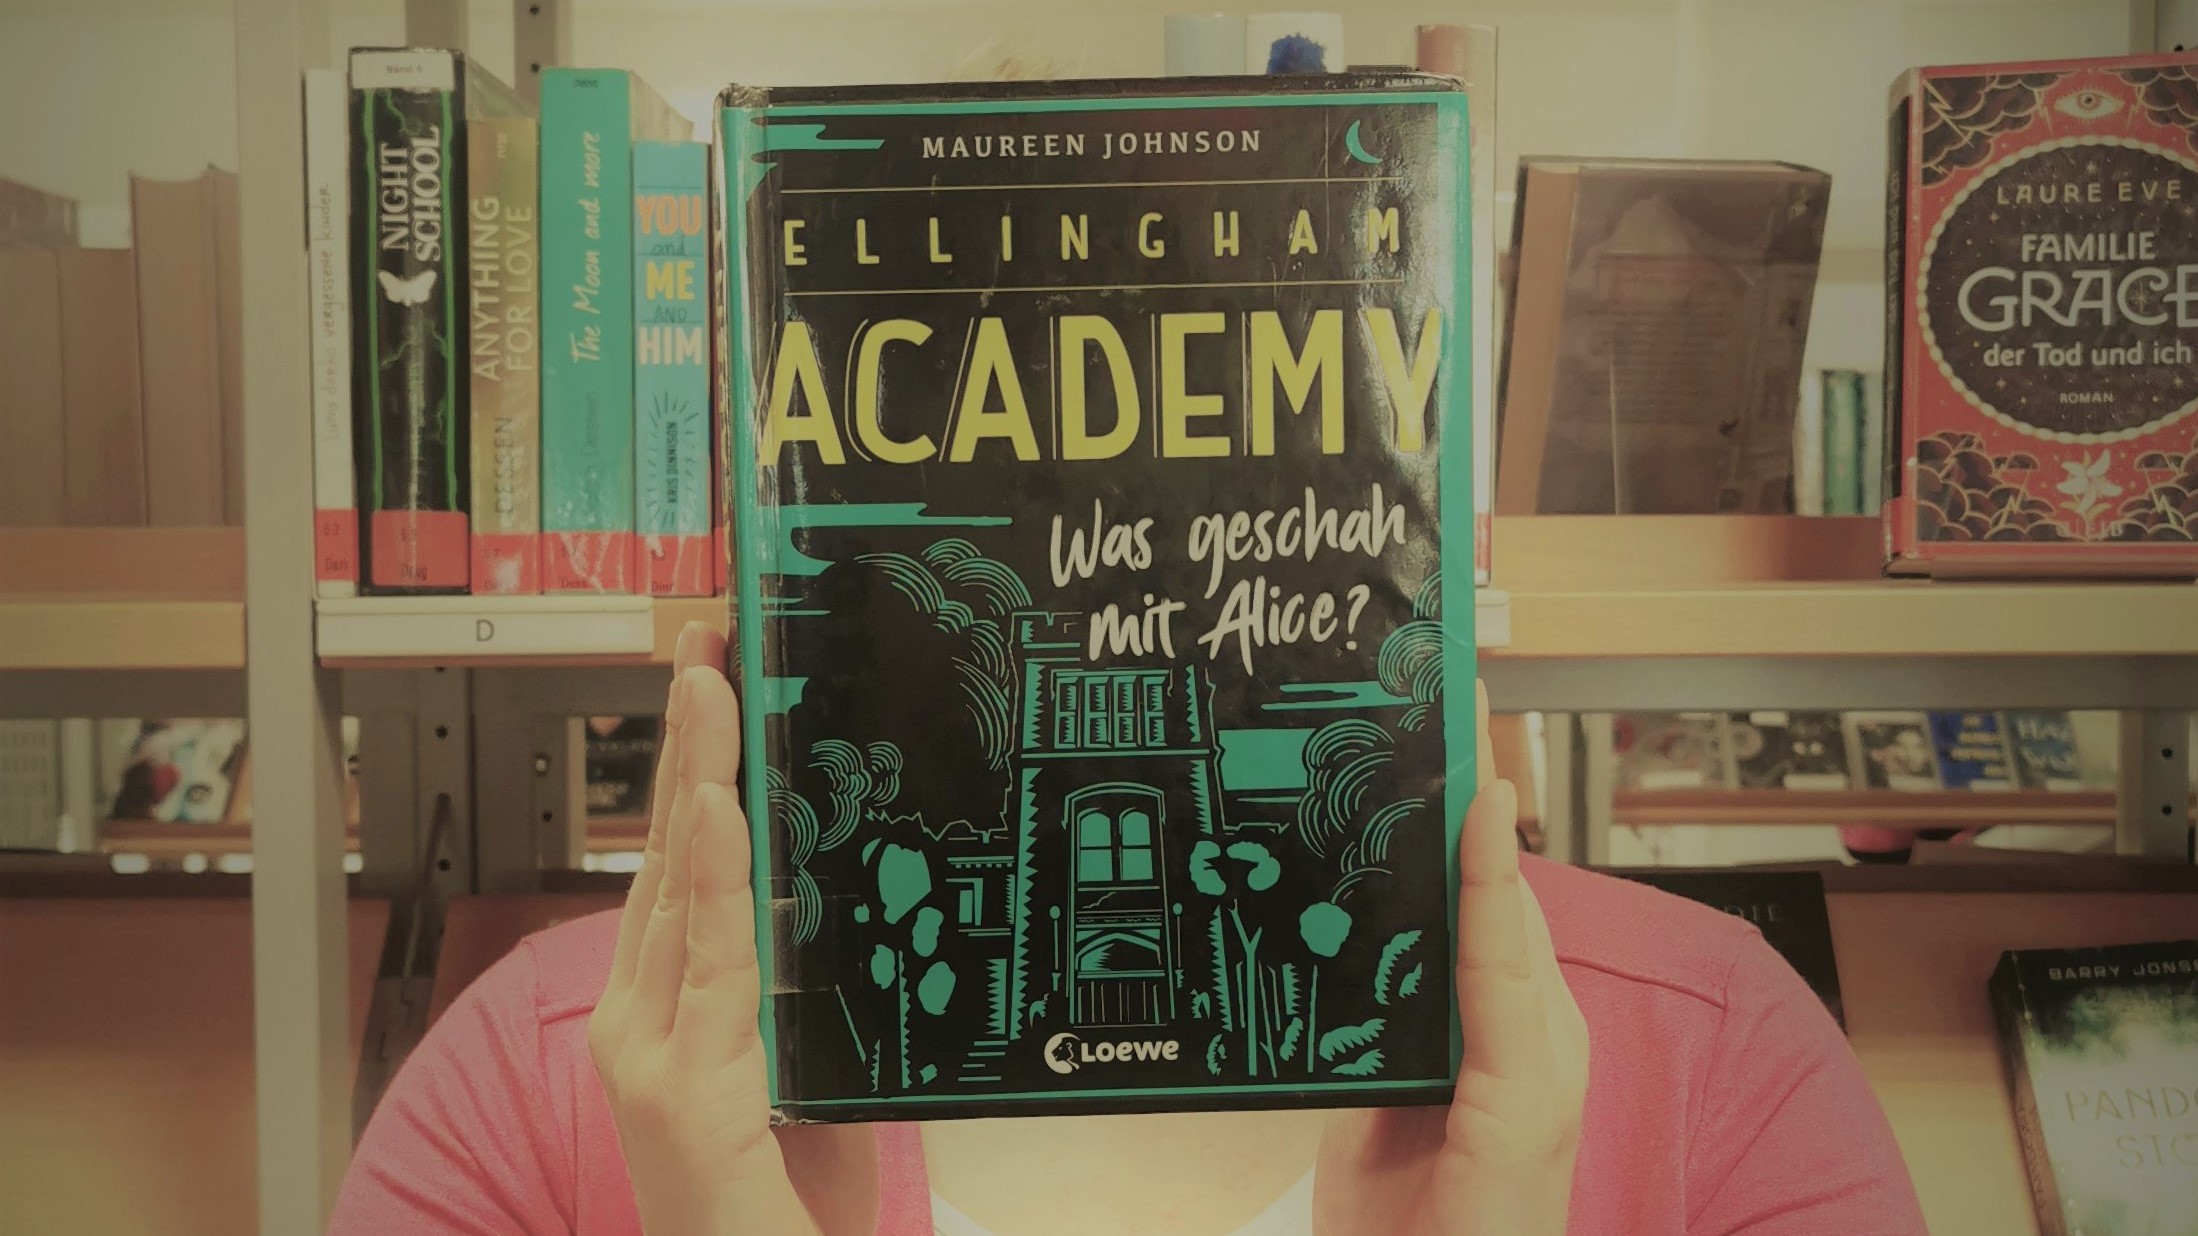 "Ellingham Academy - Was geschah mit Alice?" von Maureen Johnson